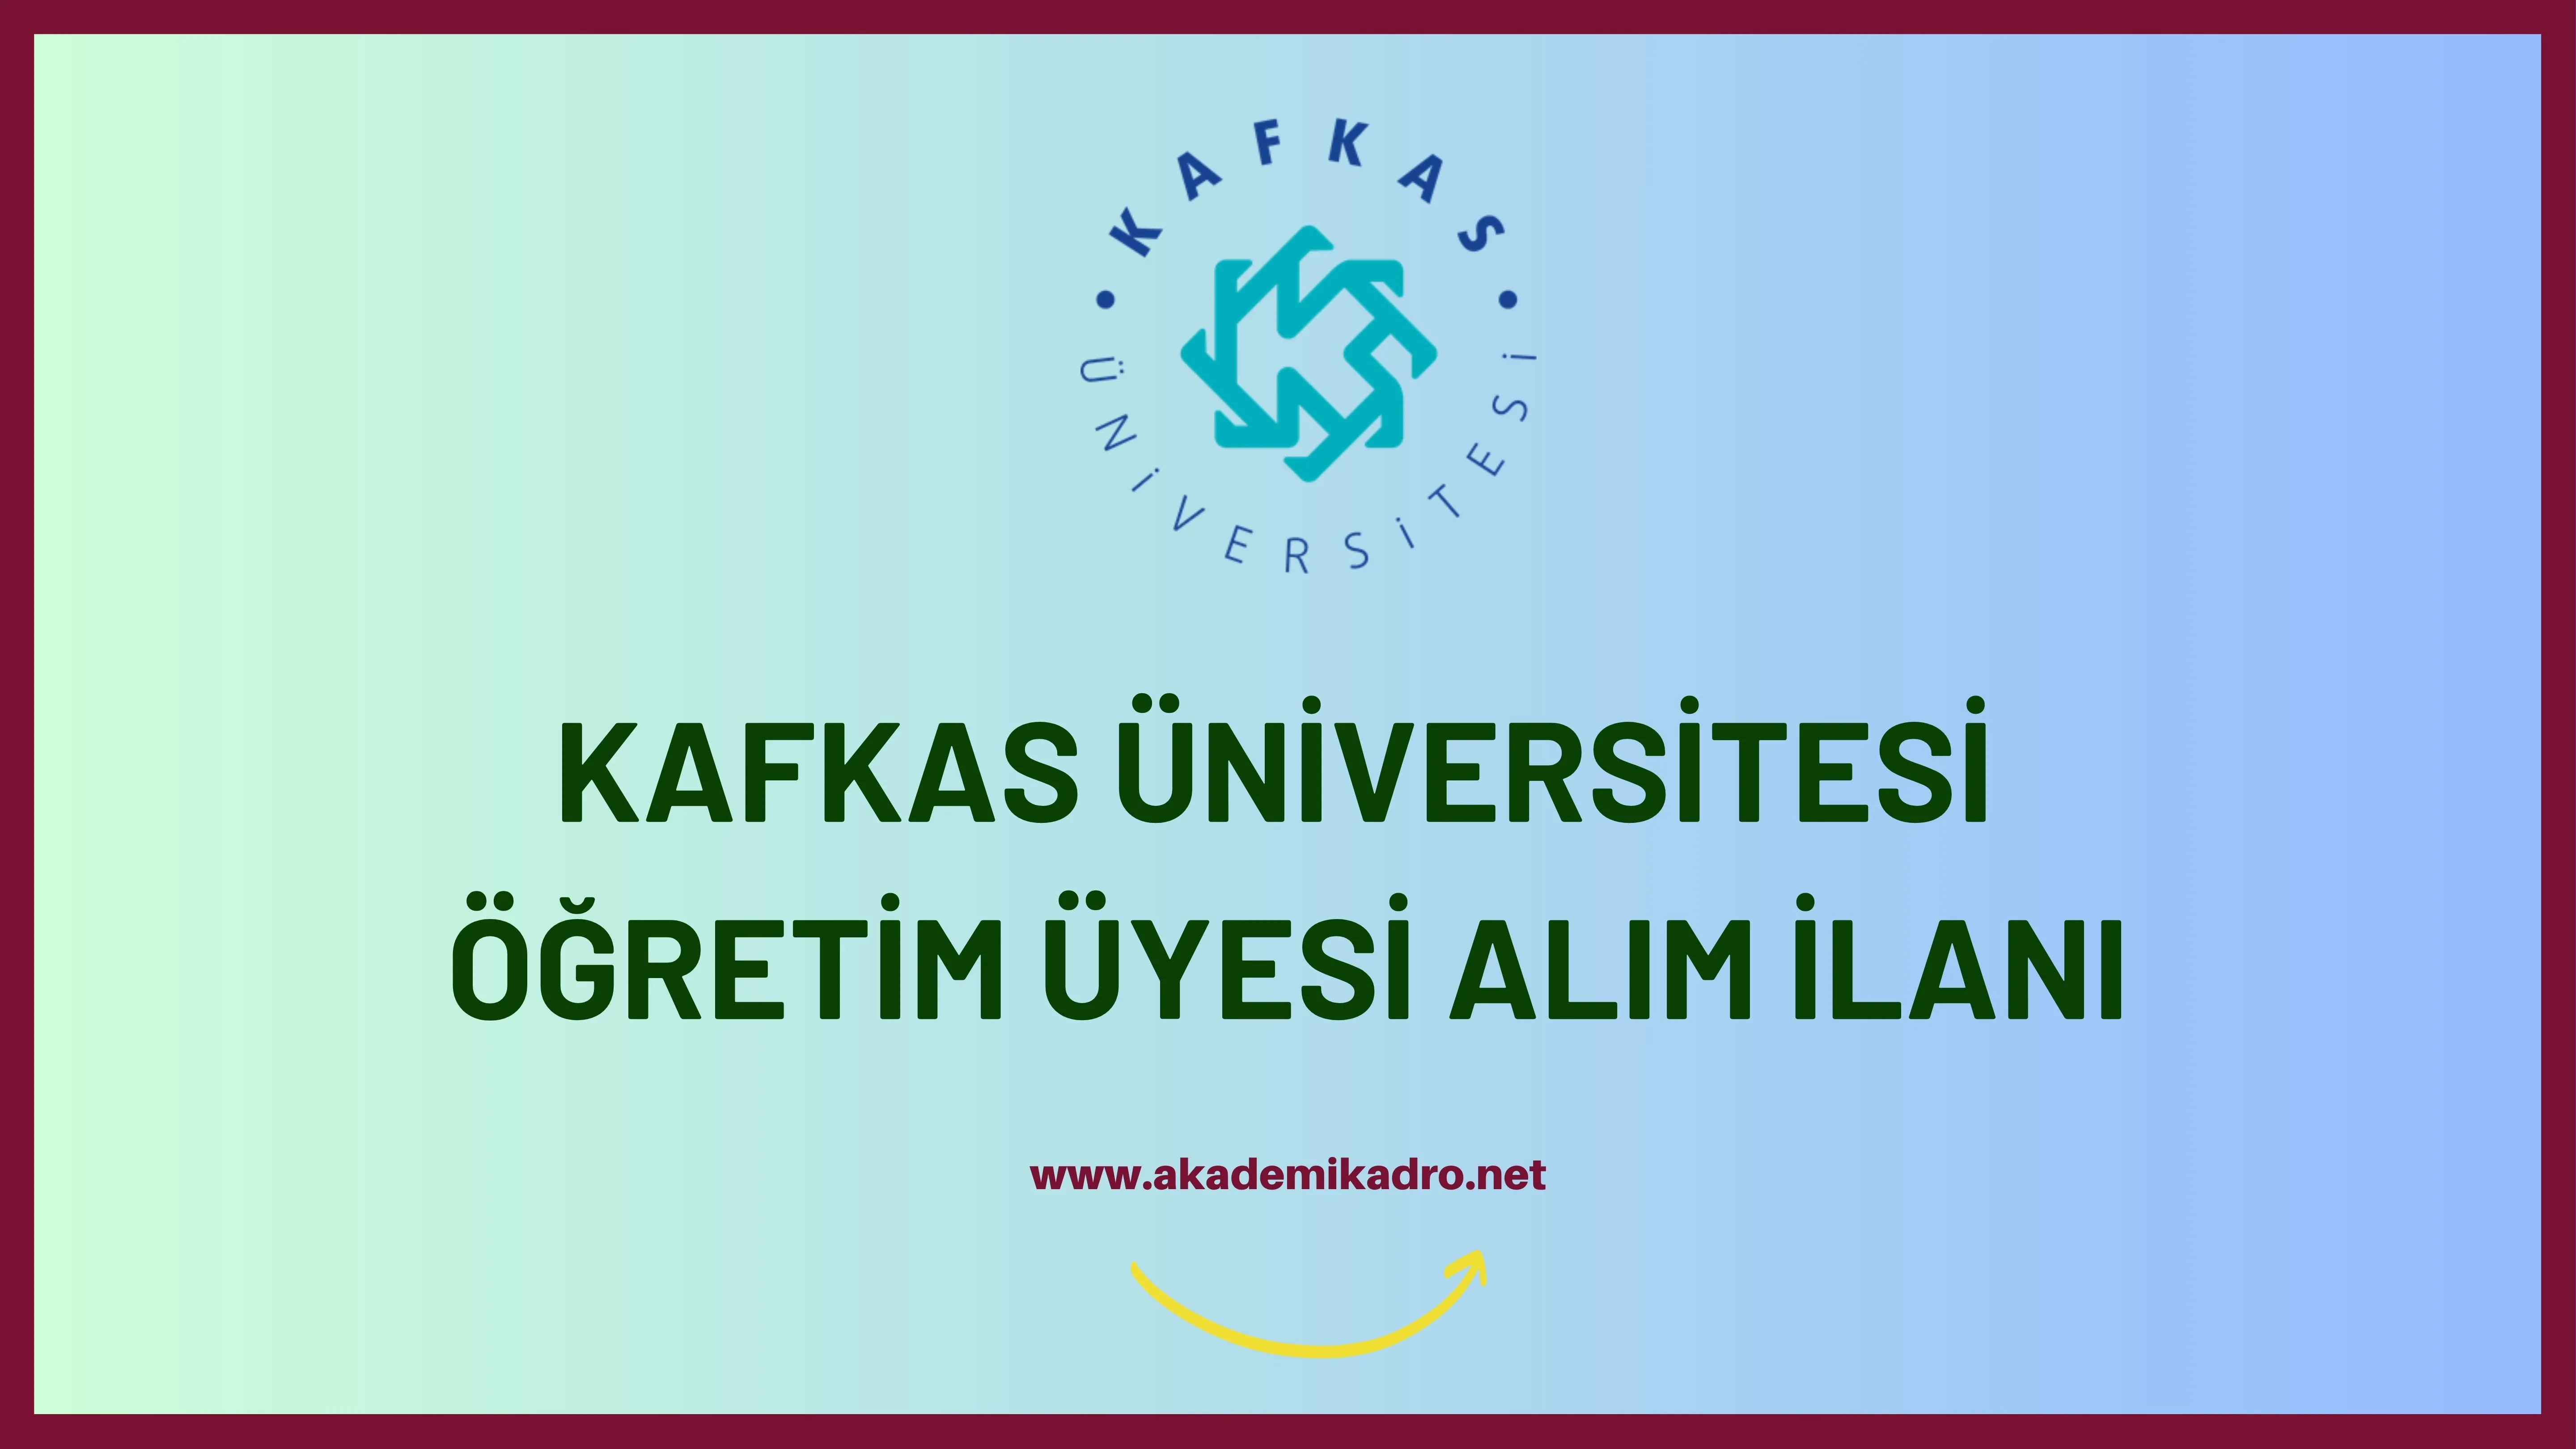 Kafkas Üniversitesi birçok alandan 44 Öğretim üyesi alacak.